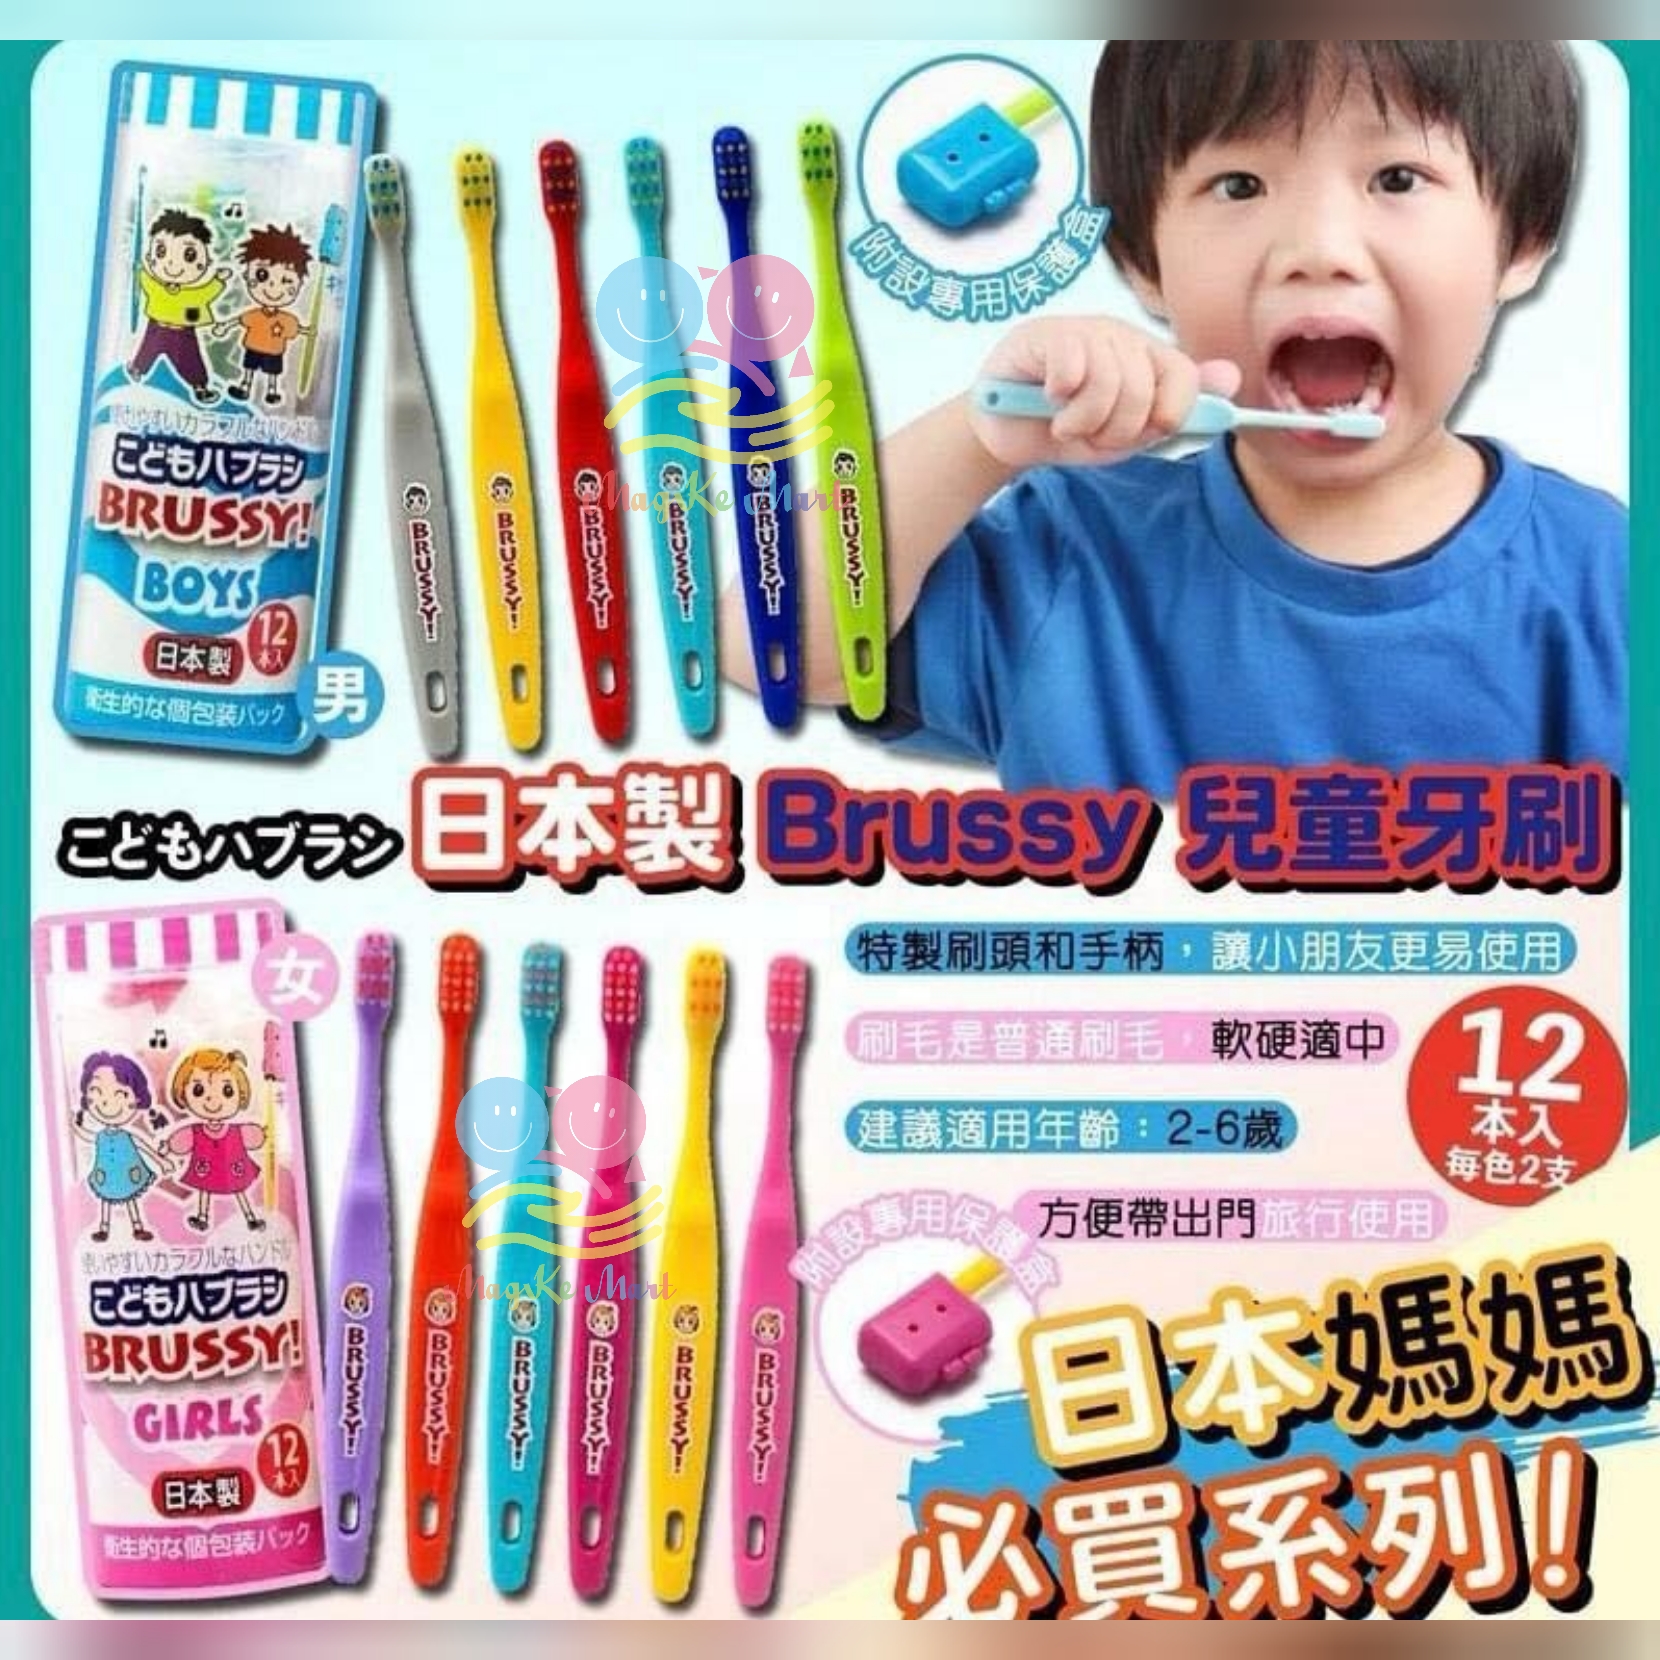 日本 Flossy 兒童Brussy牙刷(1套12支) (B) 男孩版